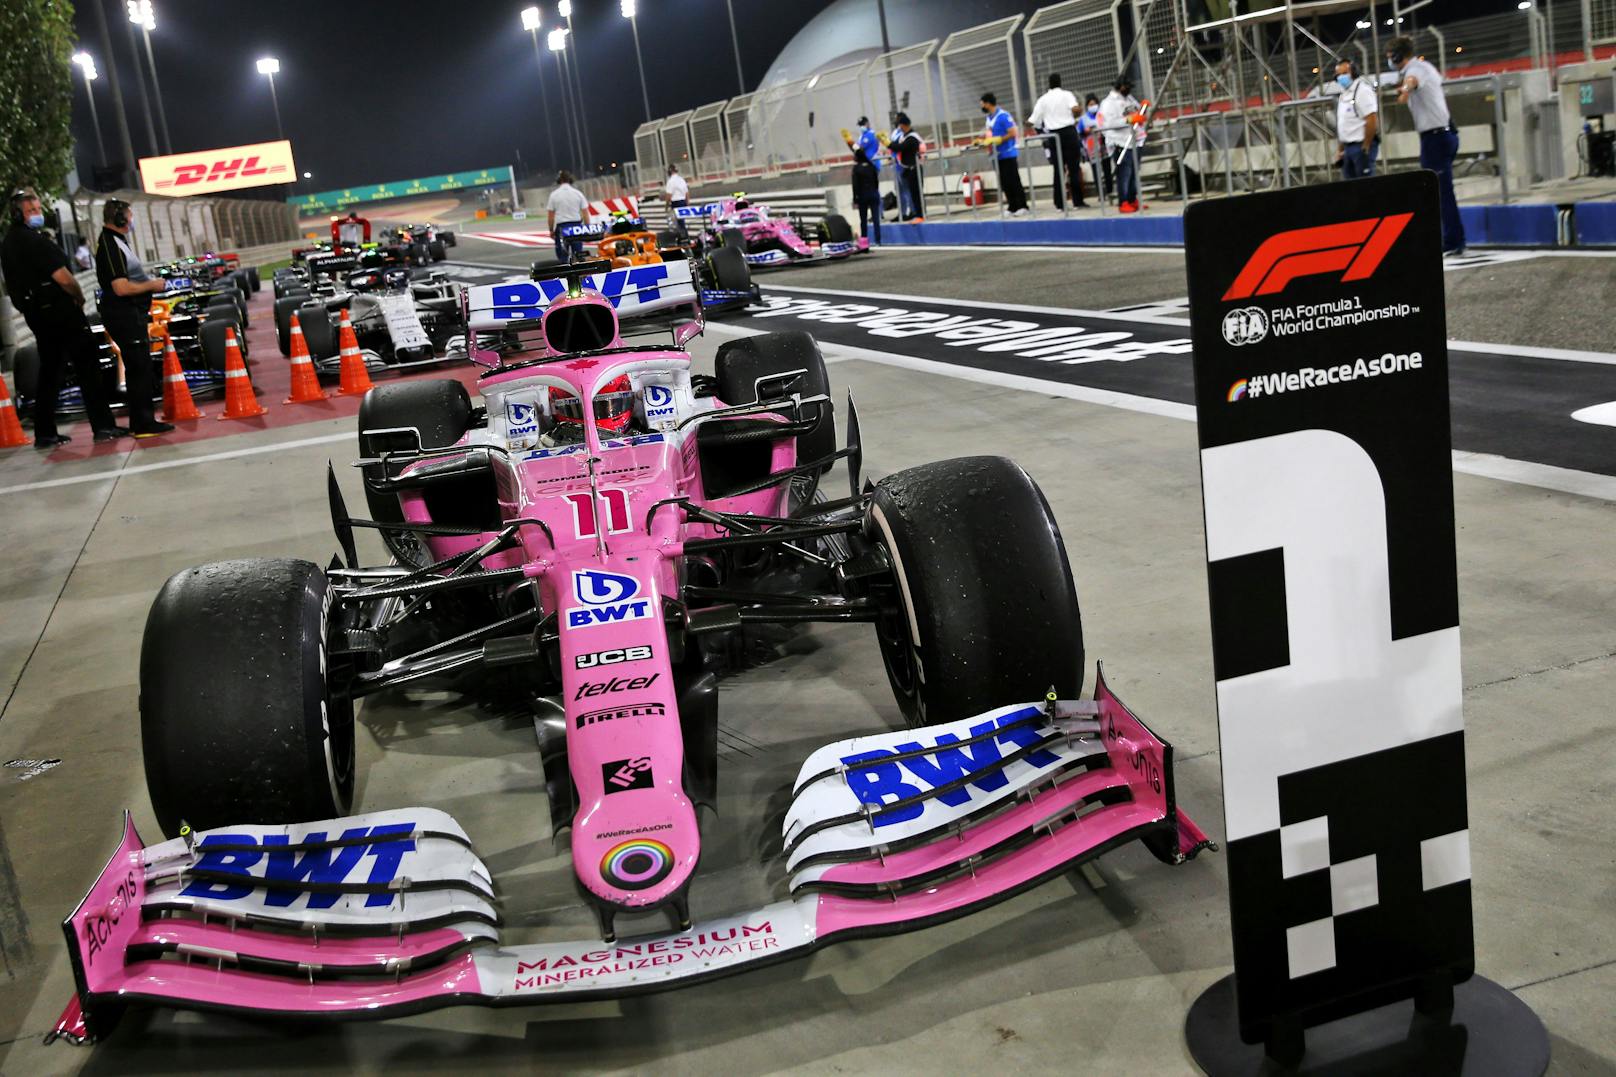 Das zweite Rennen in Bahrain gewann überraschend Sergio Perez im Racing Point – vor Ocon und Stroll. Hamilton war wegen einer Coronavirus-Erkrankung nicht am Start.